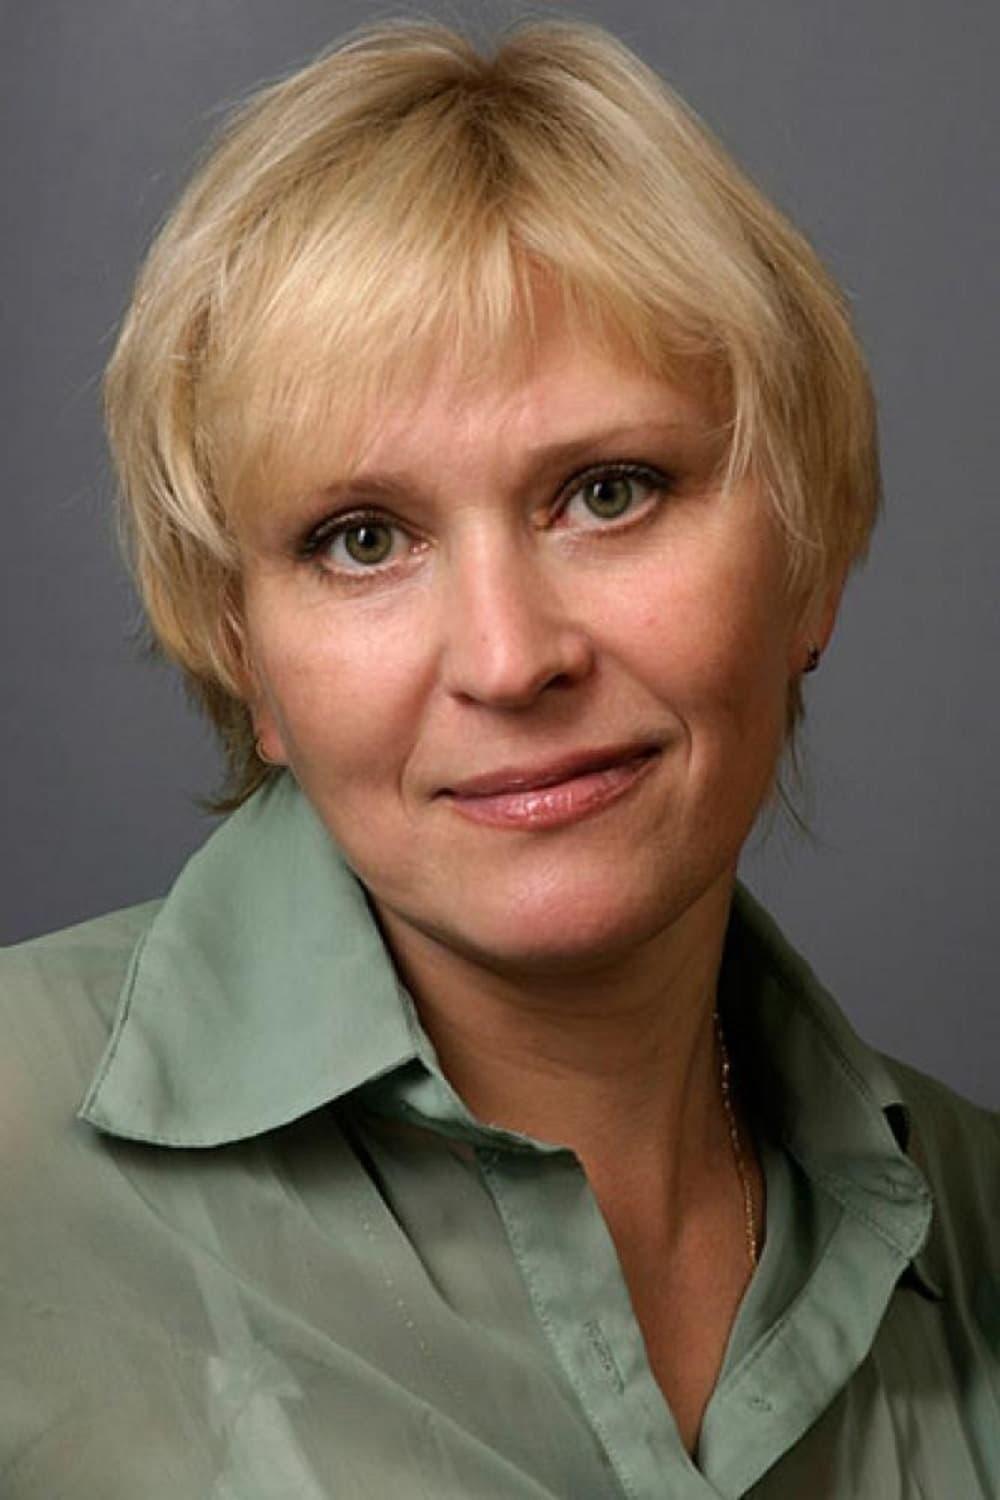 Anna Gulyarenko | 